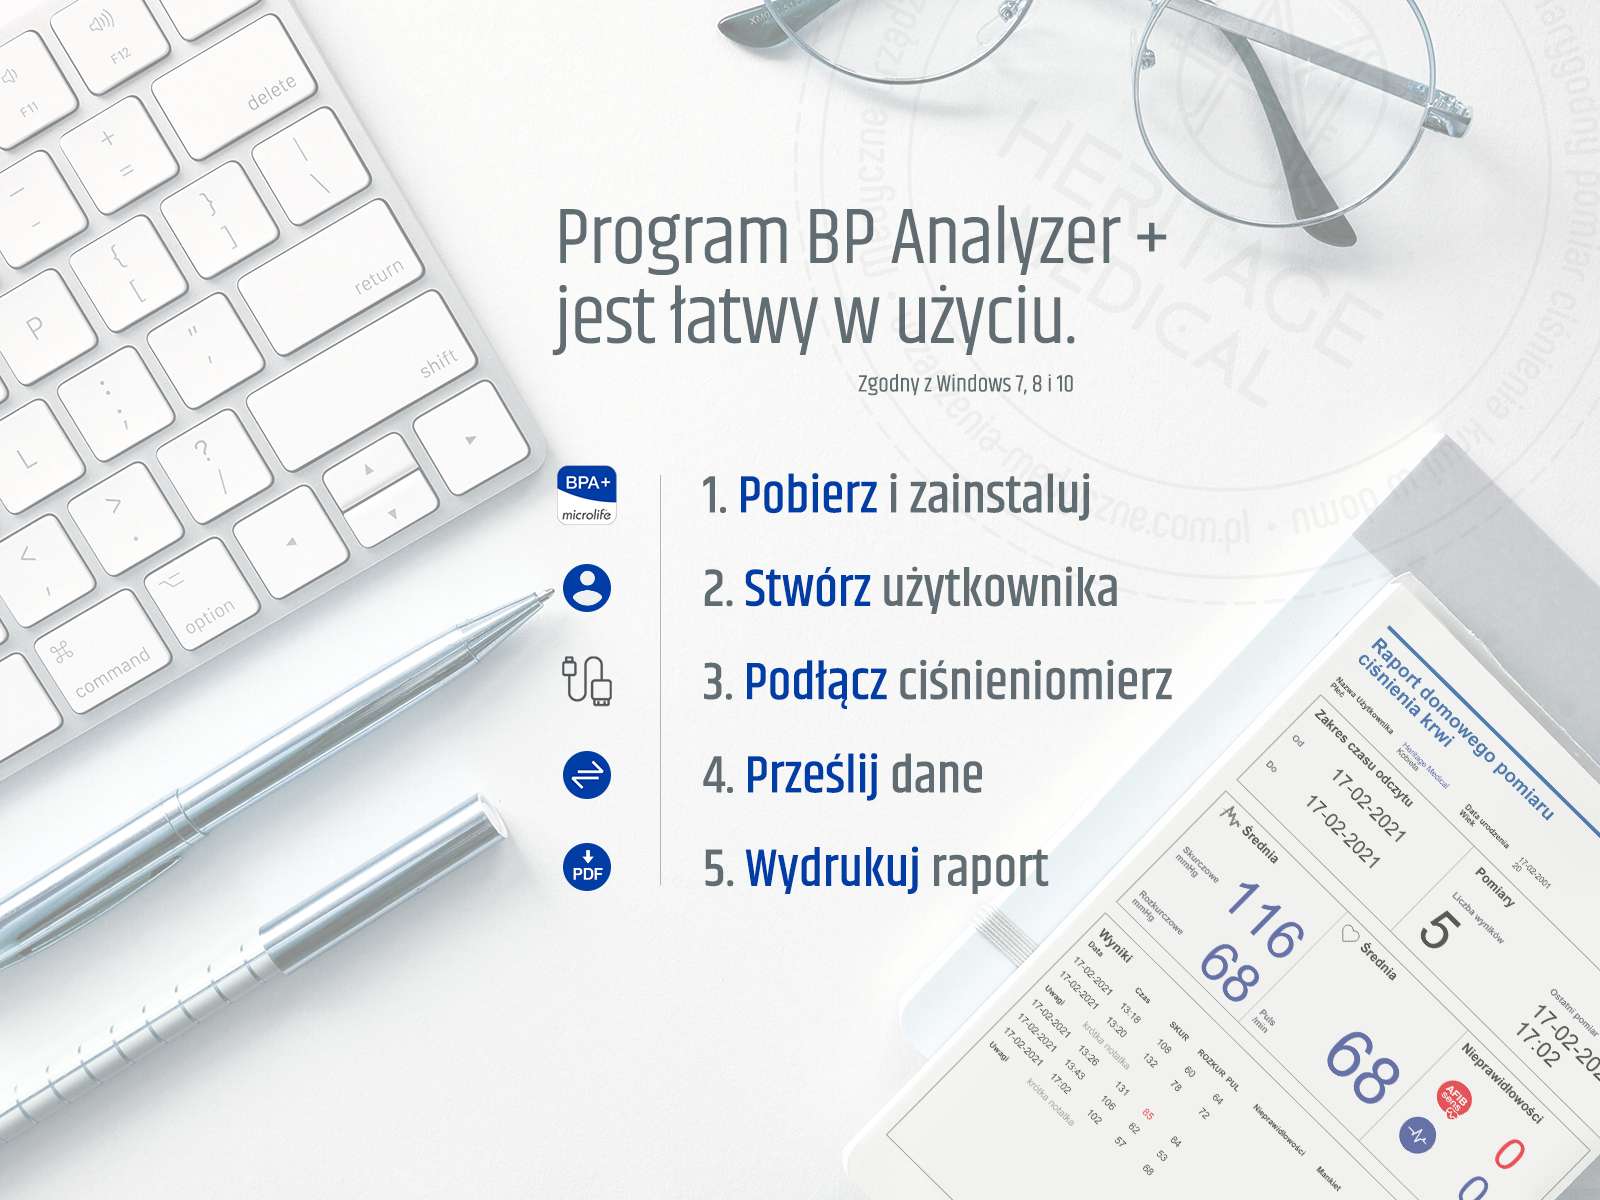 Oprogramowanie Microlife BPA + obsługuje wiele profili użytkowników, dzięki czemu wszyscy członkowie Twojej rodziny mogą tworzyć swoje indywidualne profile, aby przechowywać i przeglądać pomiary ciśnienia krwi na komputerze